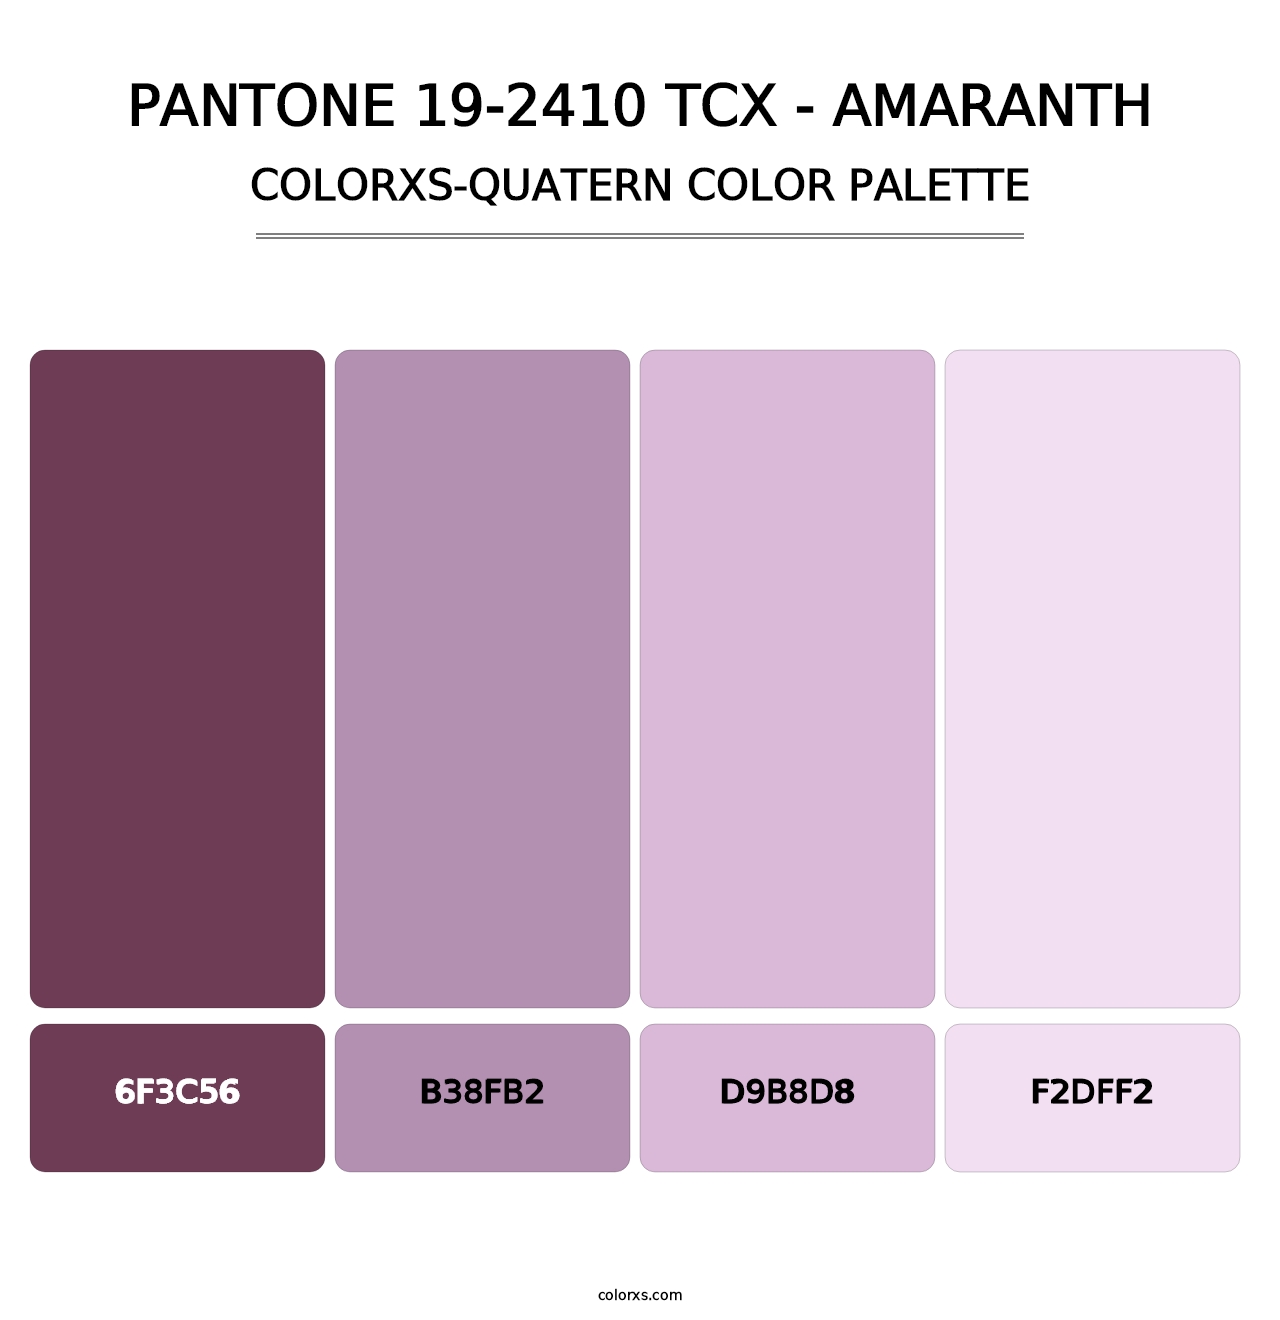 PANTONE 19-2410 TCX - Amaranth - Colorxs Quatern Palette